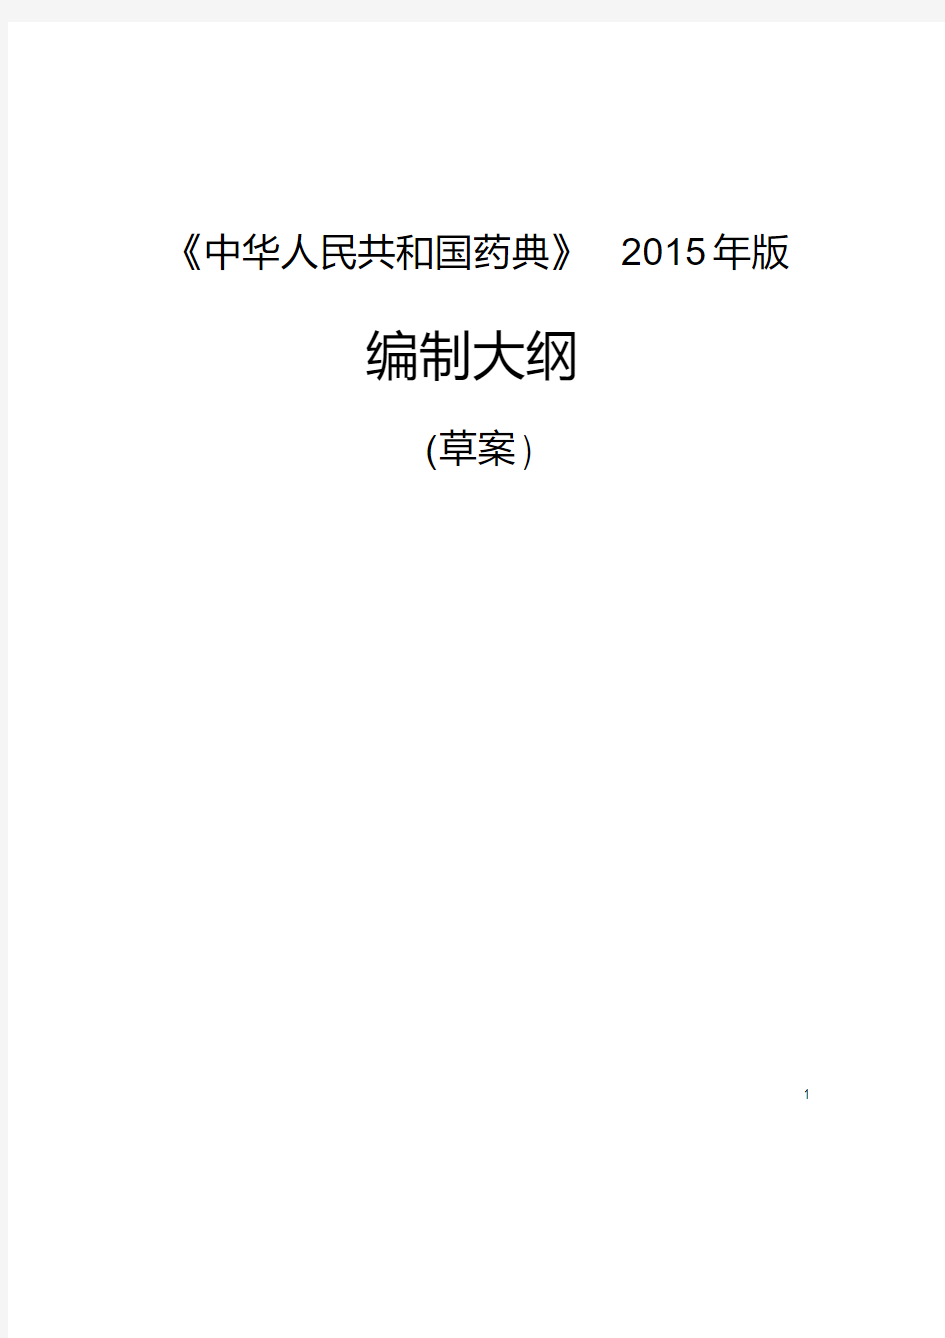 《中华人民共和国药典》2015年版